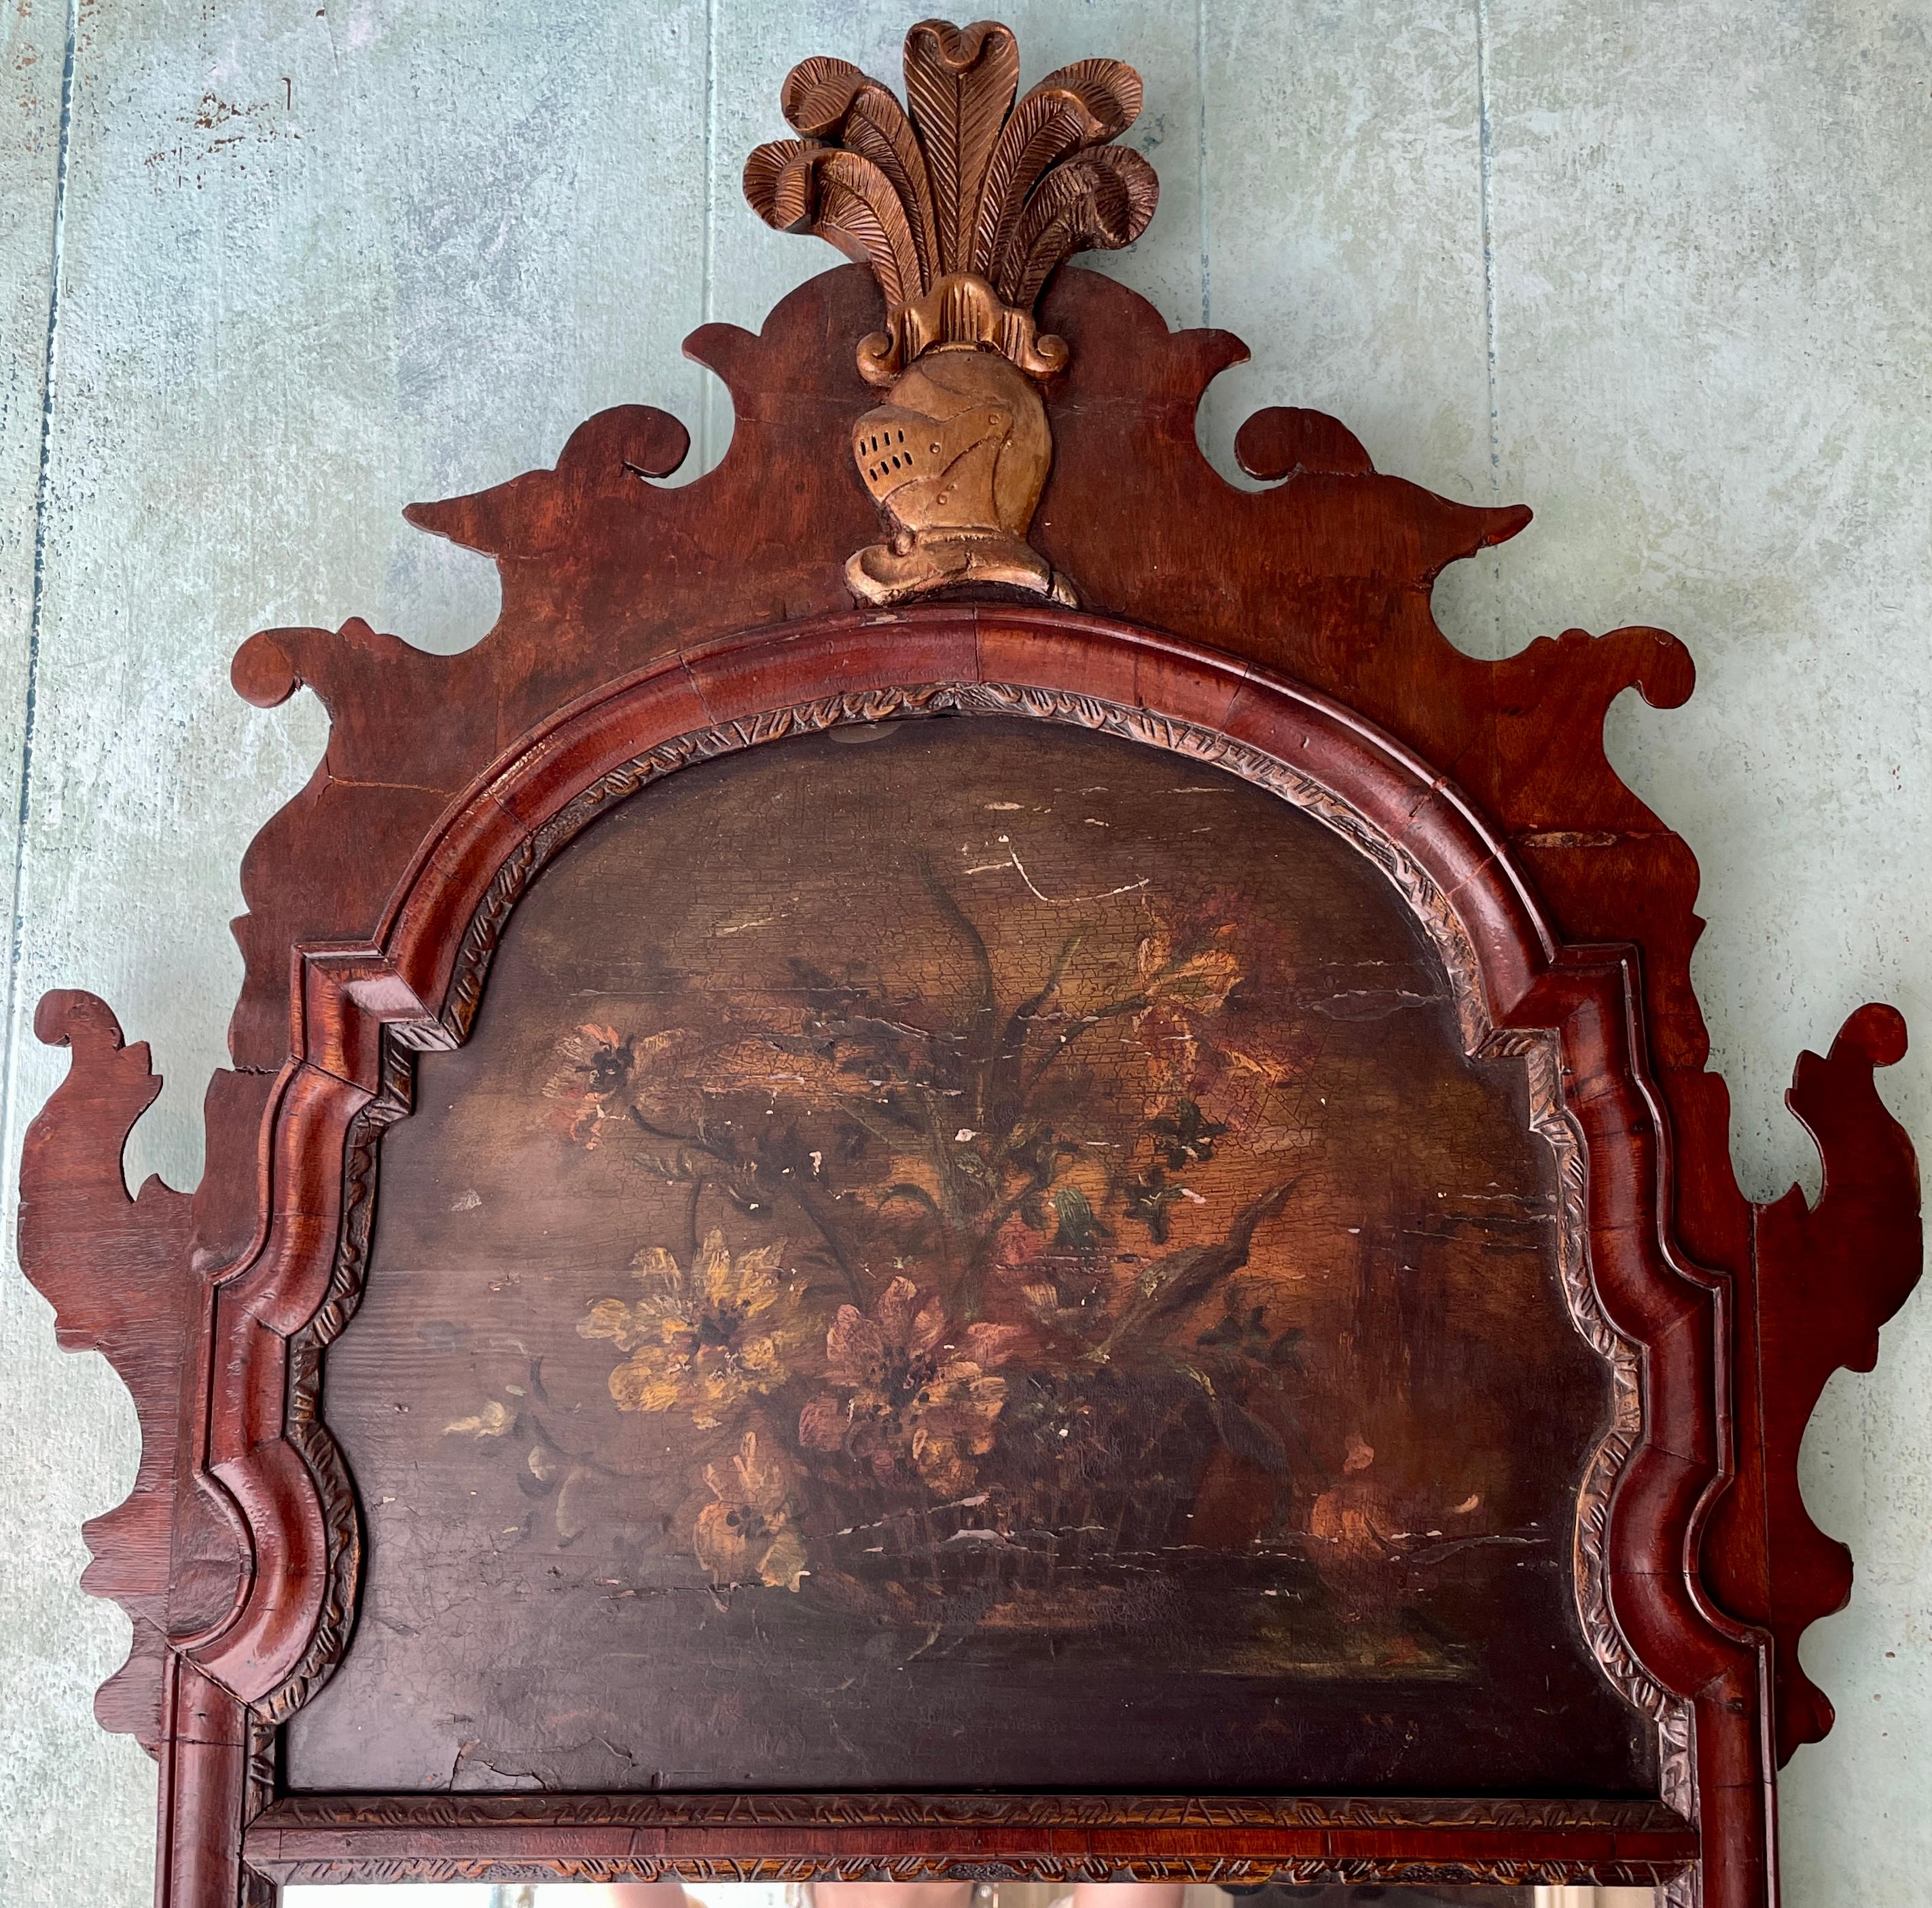 Antique miroir anglais du 18ème siècle en noyer sculpté avec une peinture florale.